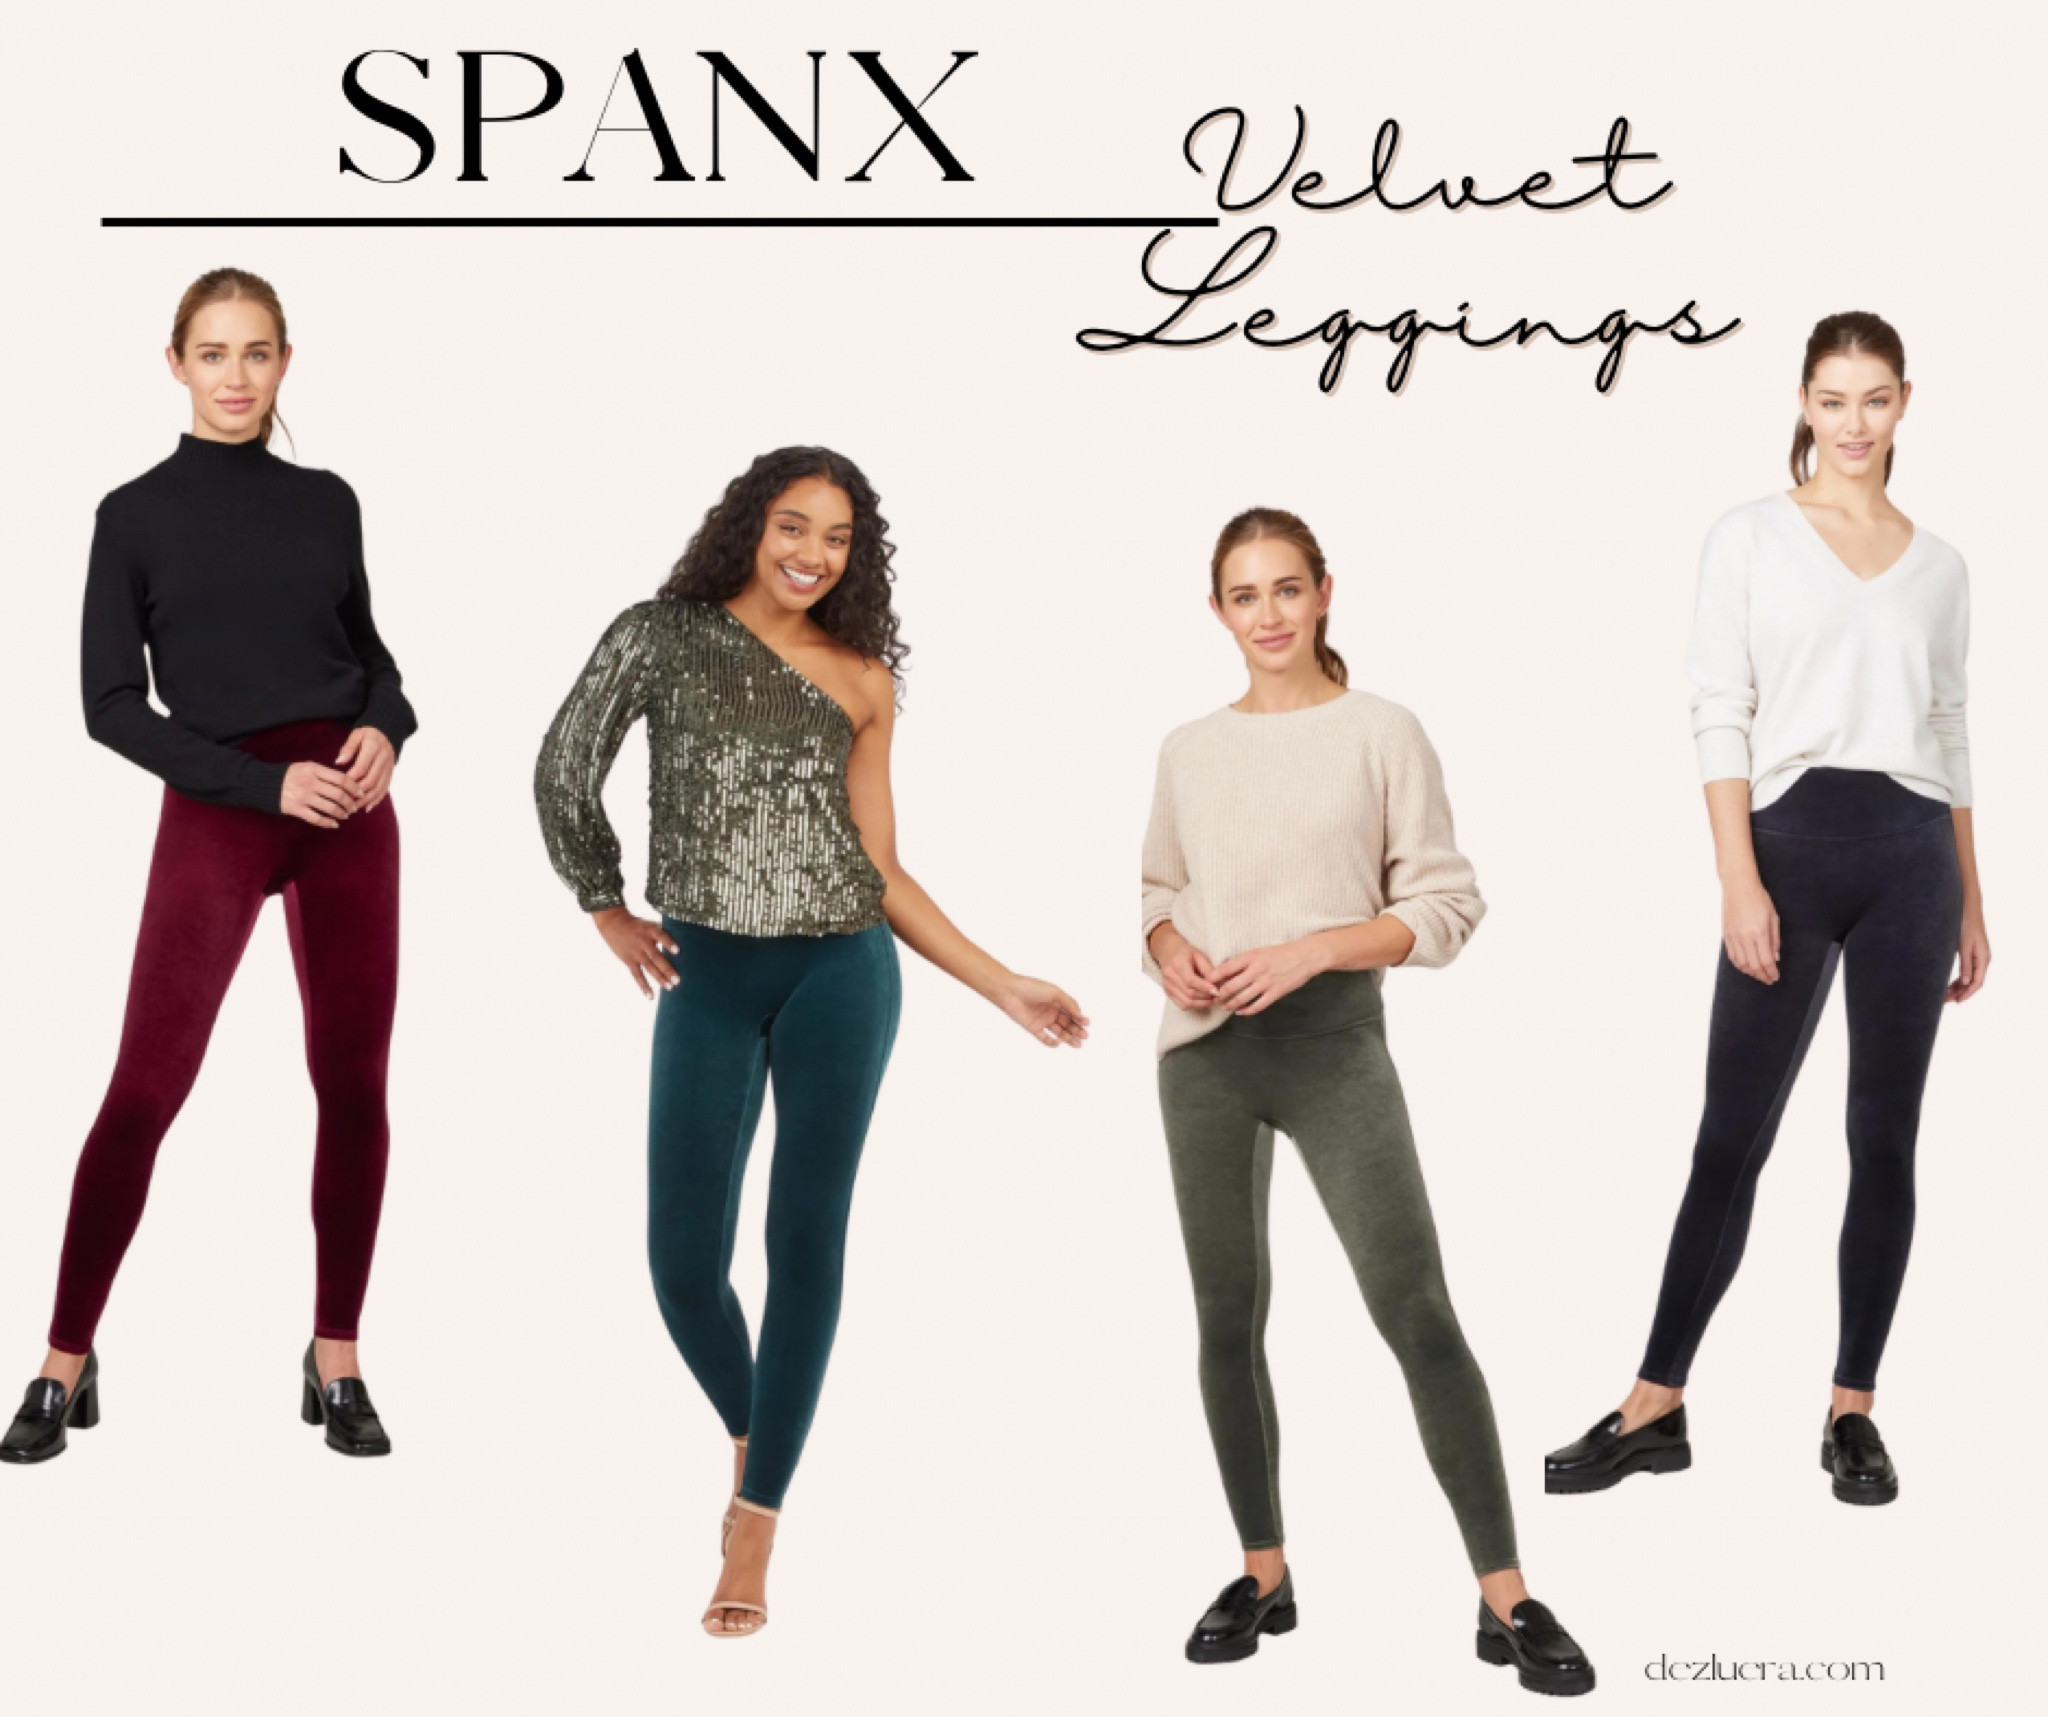 SPANX® Velvet Leggings curated on LTK